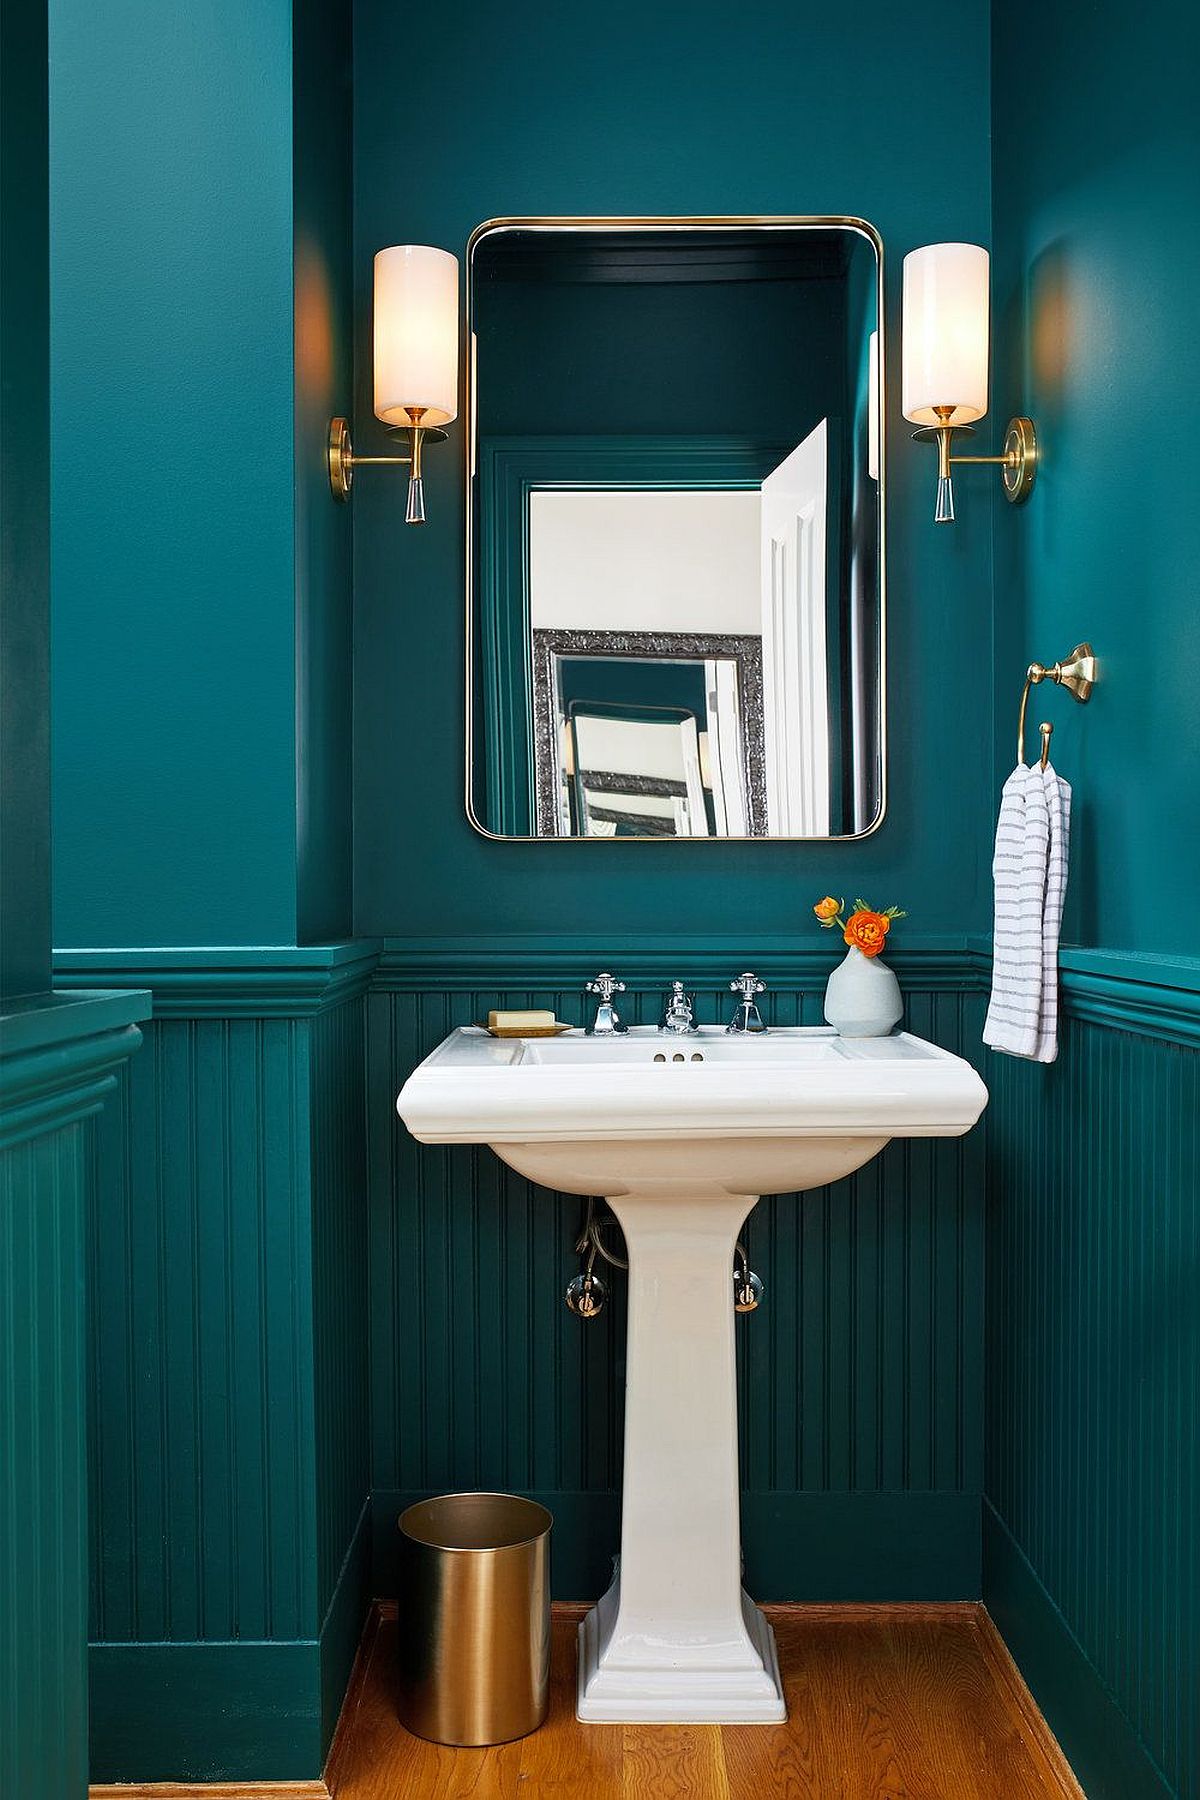 Phòng tắm màu xanh mòng két hiện đại tuyệt đẹp tạo cảm giác hoàn hảo như bức tranh